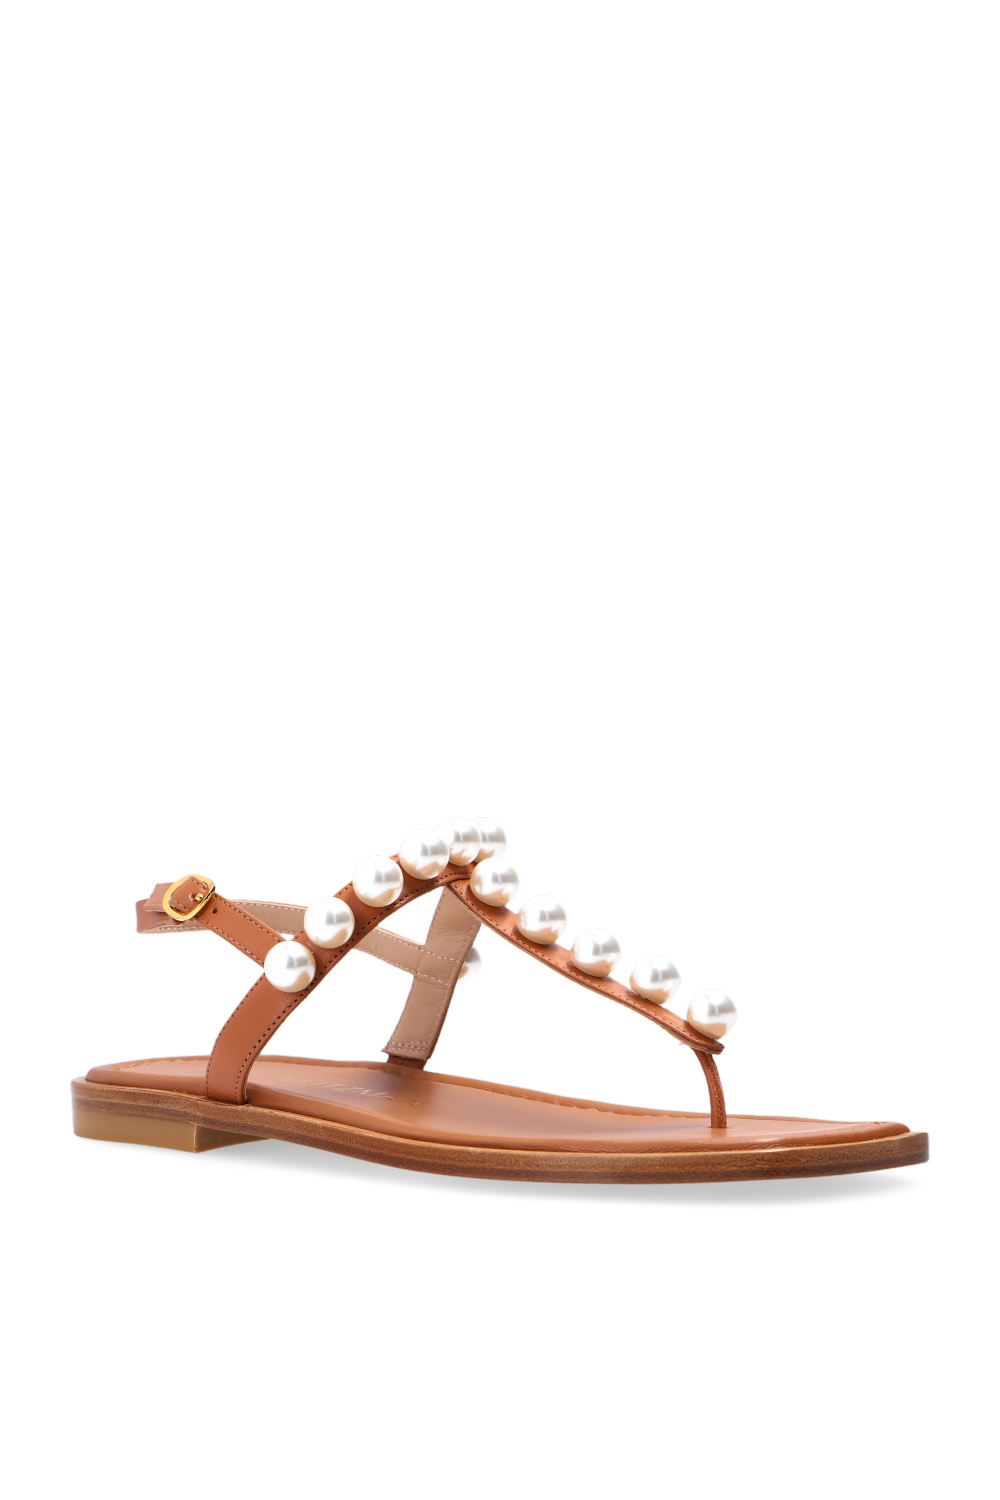 Stuart Weitzman ‘Goldie’ sandals